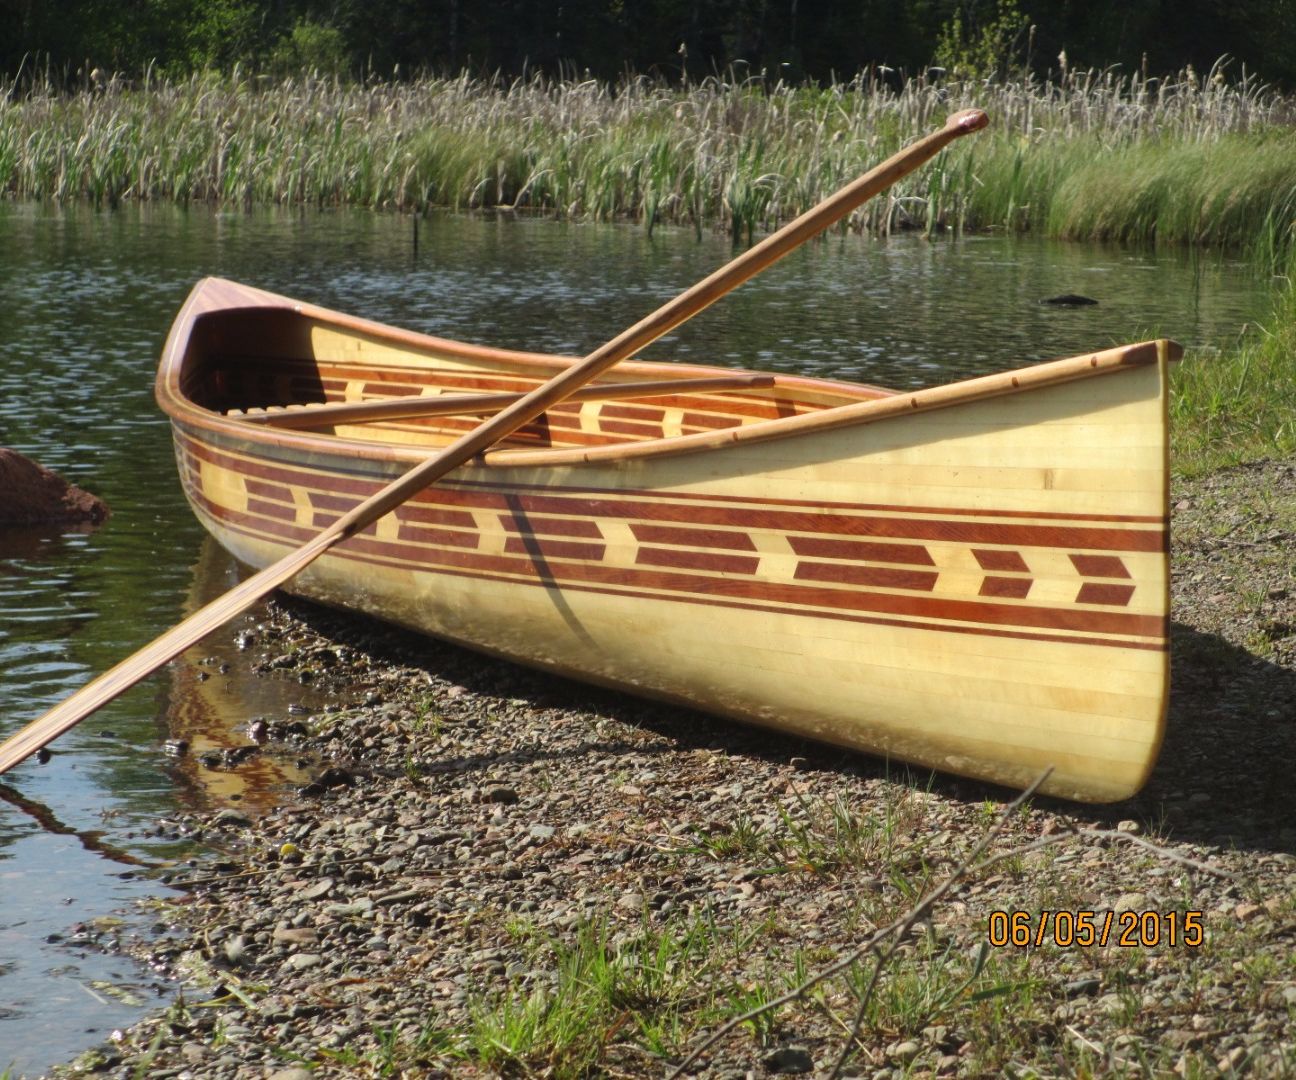 Building my cedar strip canoe